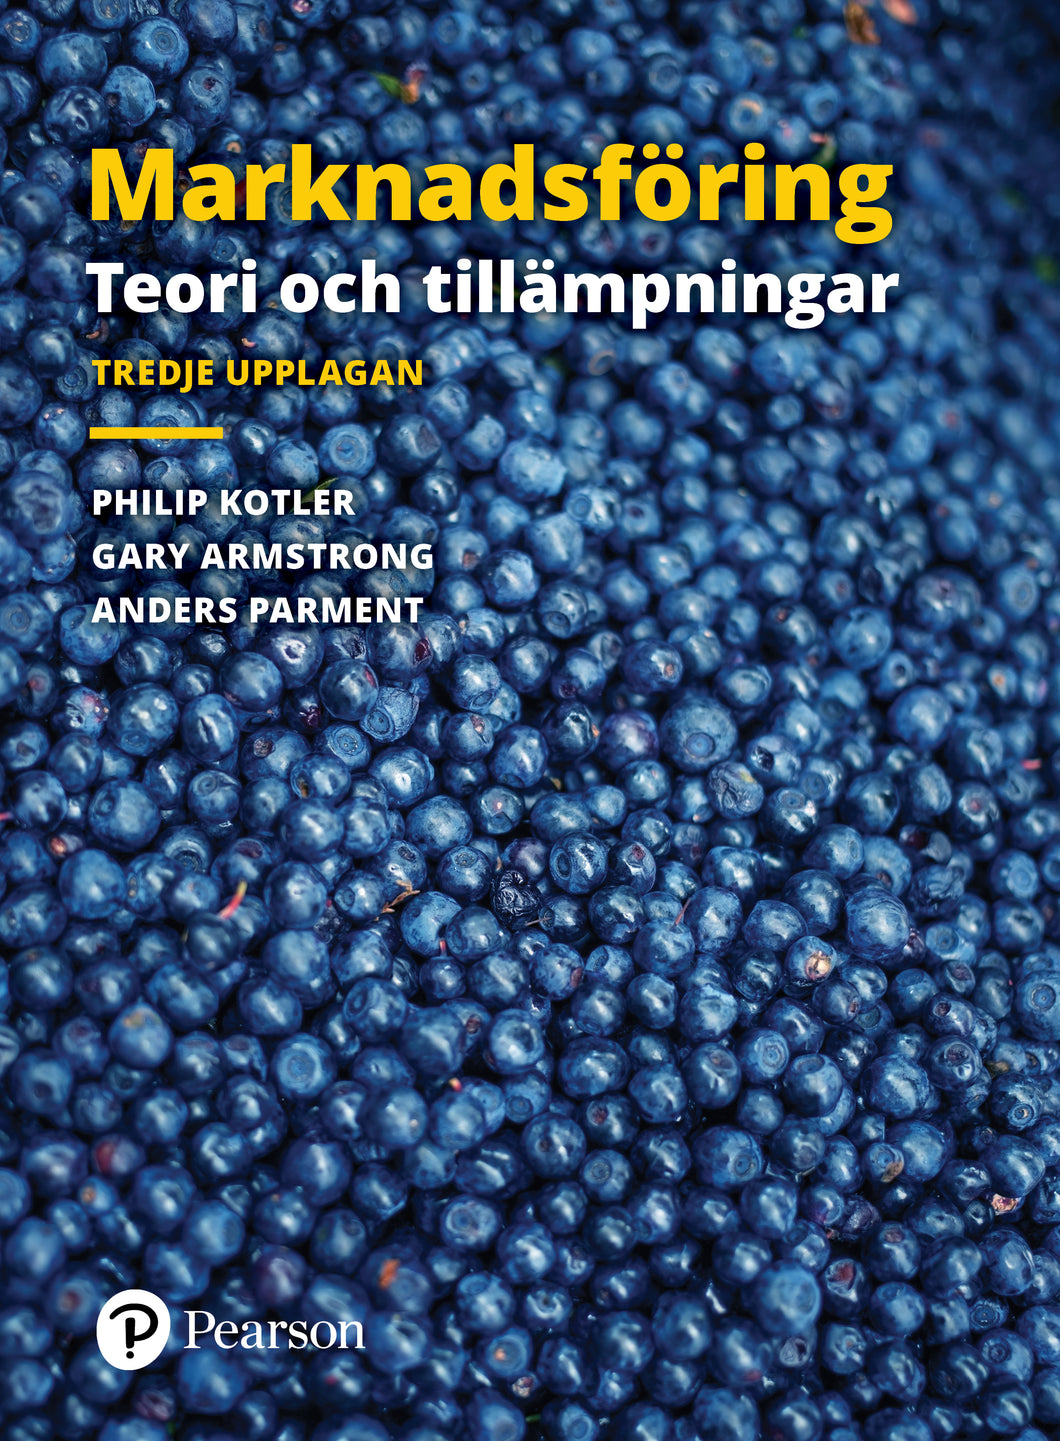 Marknadsföring: Teori och tillämpningar, 3rd edition e-book